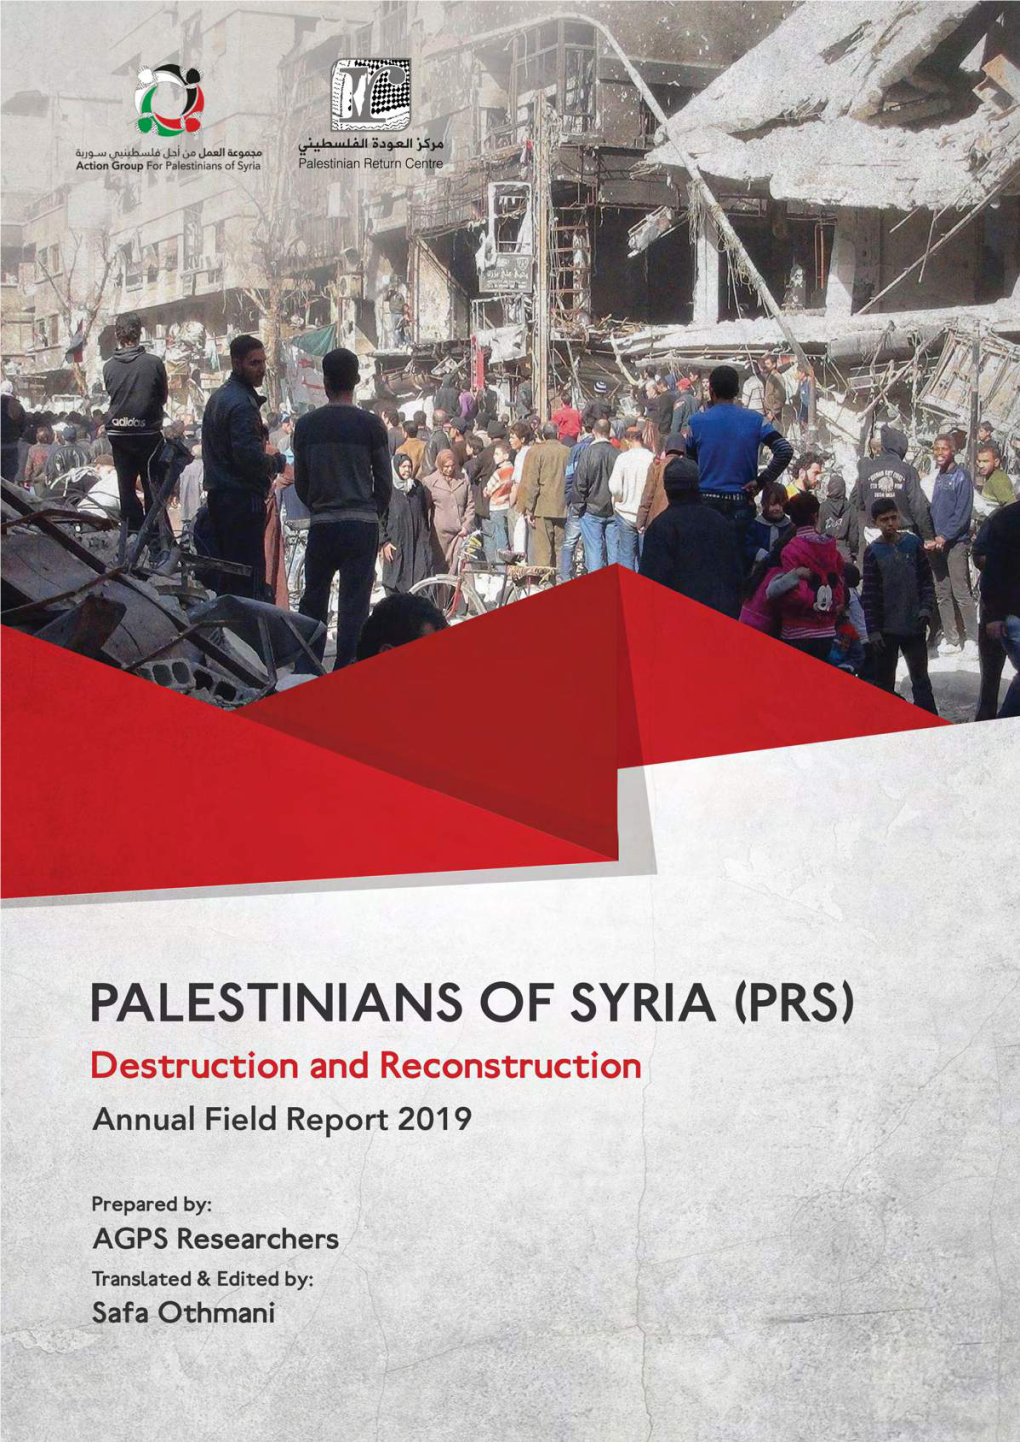 Annual Field Report 2019